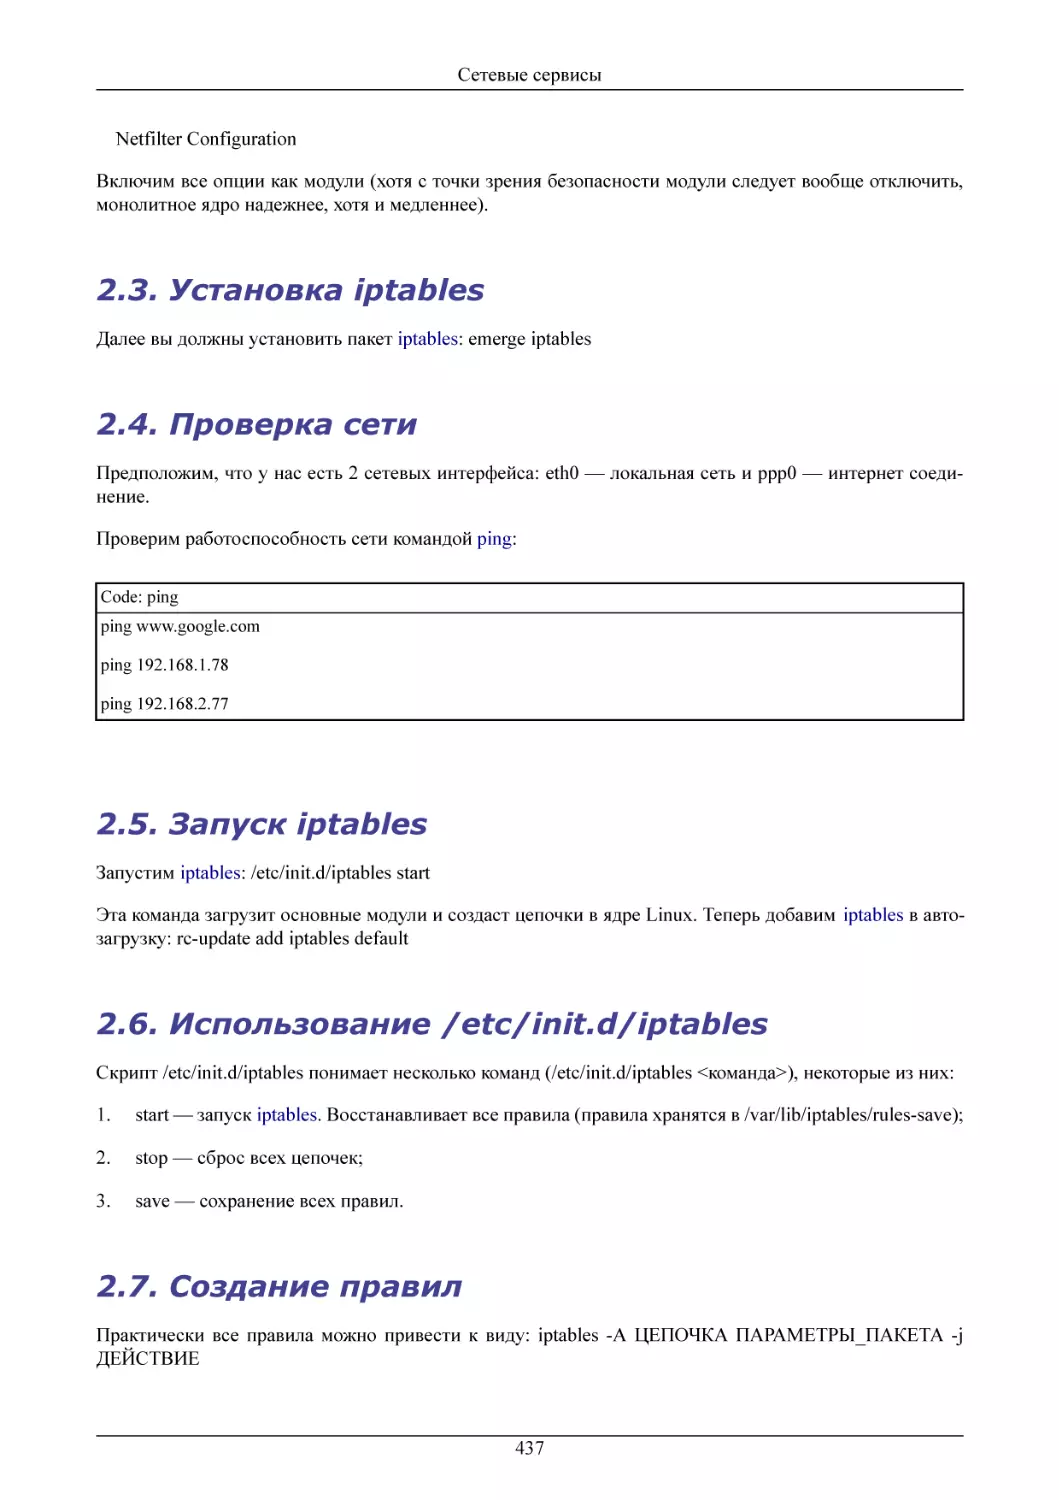 Установка iptables
Проверка сети
Запуск iptables
Использование /etc/init.d/iptables
Создание правил